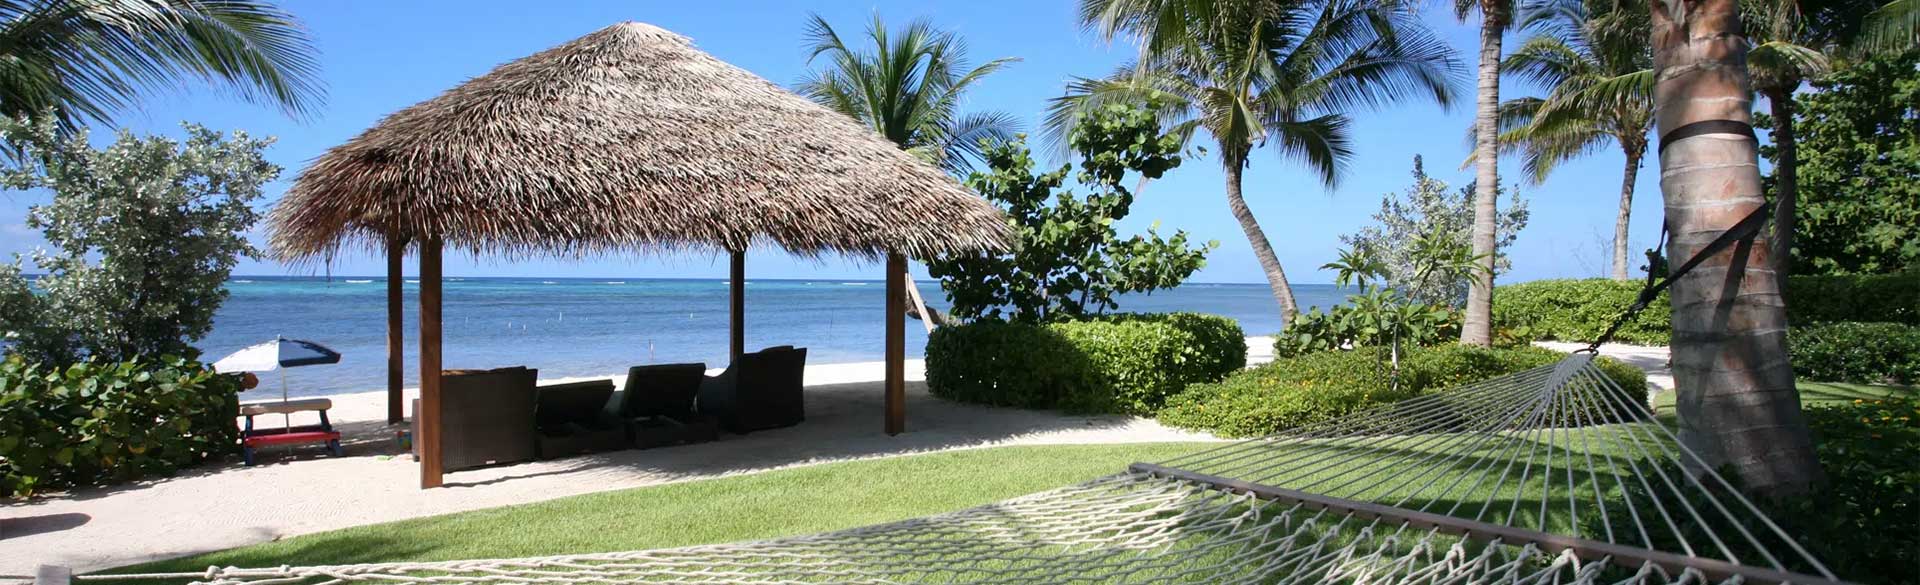 Tiki-inspired beach cabana at Castillo Caribe